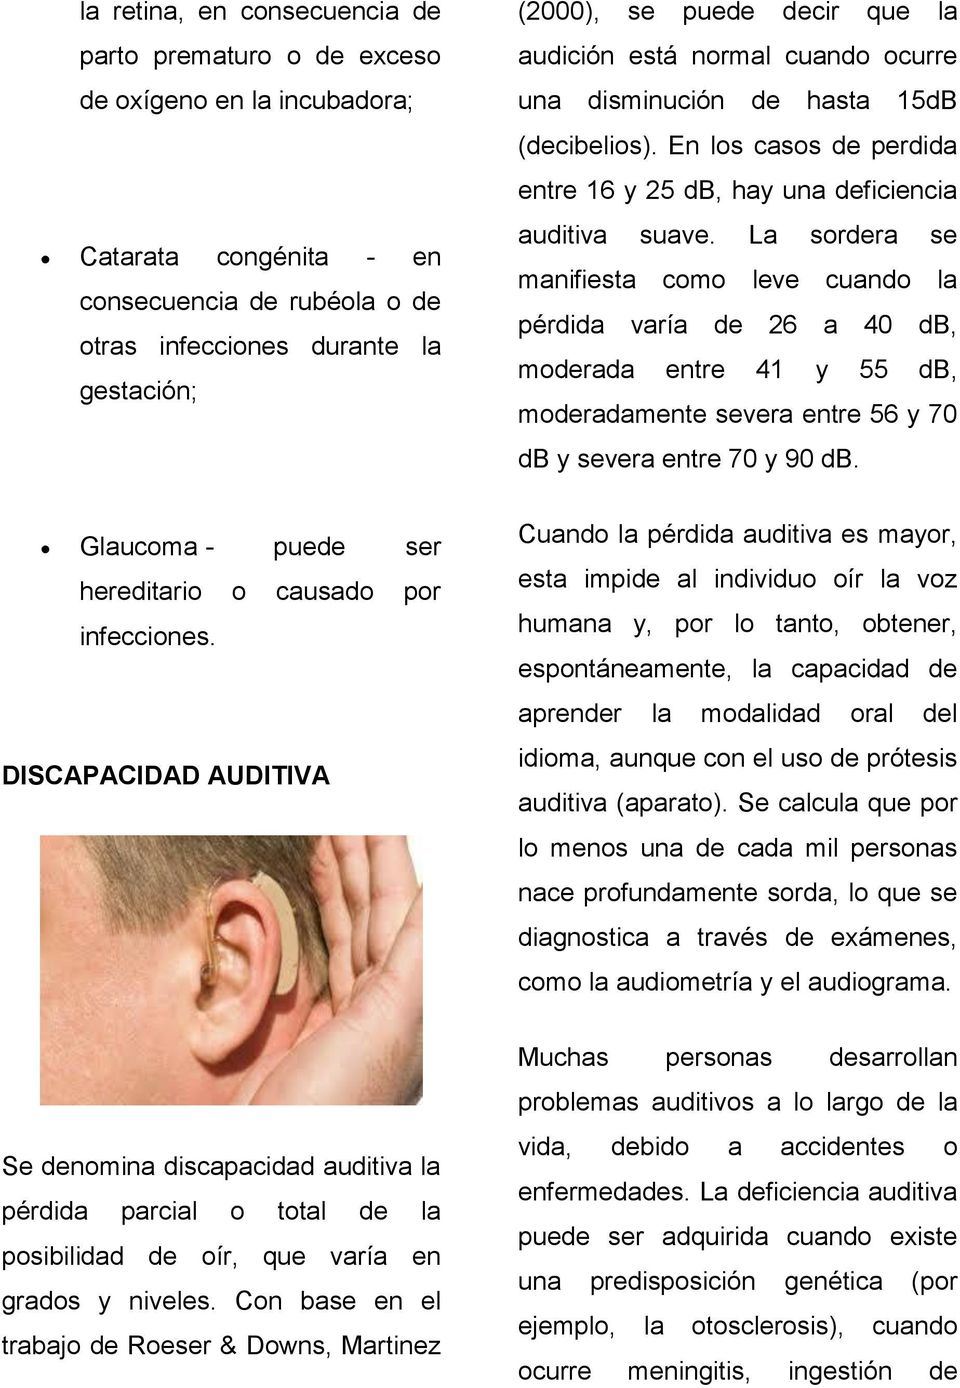 En los casos de perdida entre 16 y 25 db, hay una deficiencia auditiva suave.